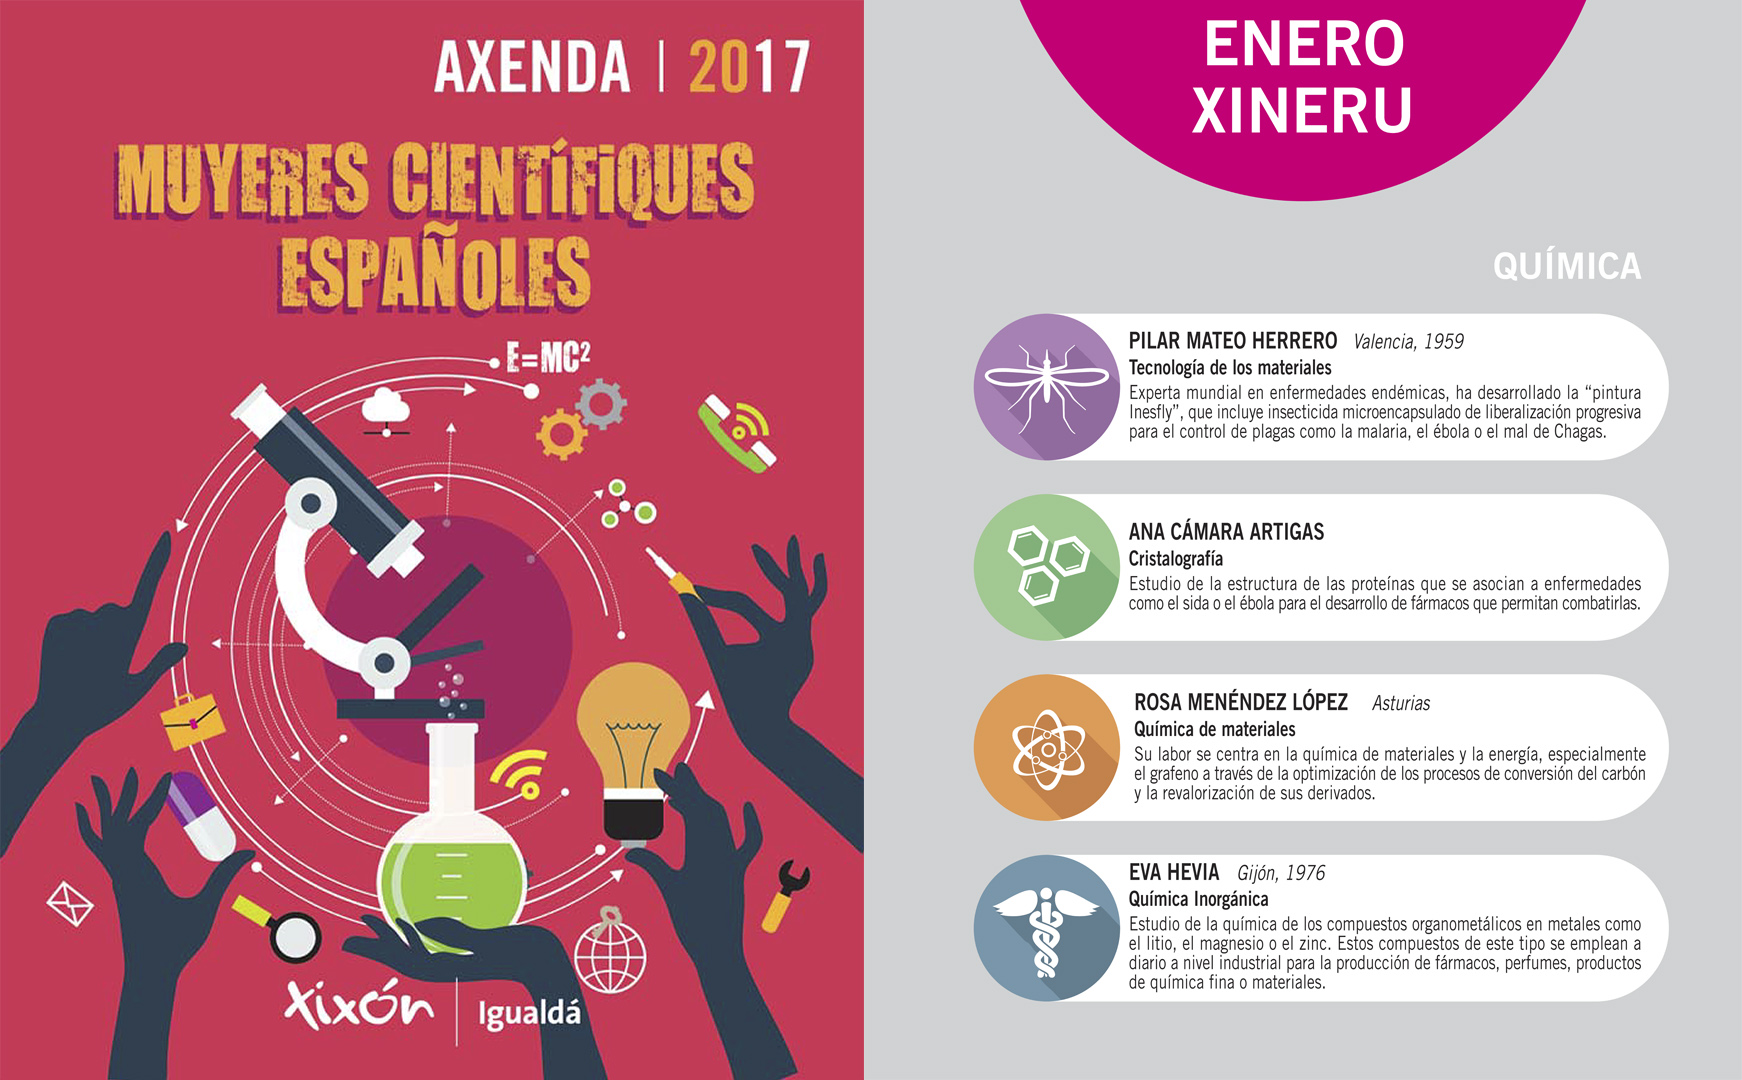 Imagen Agenda 2017 Gijon